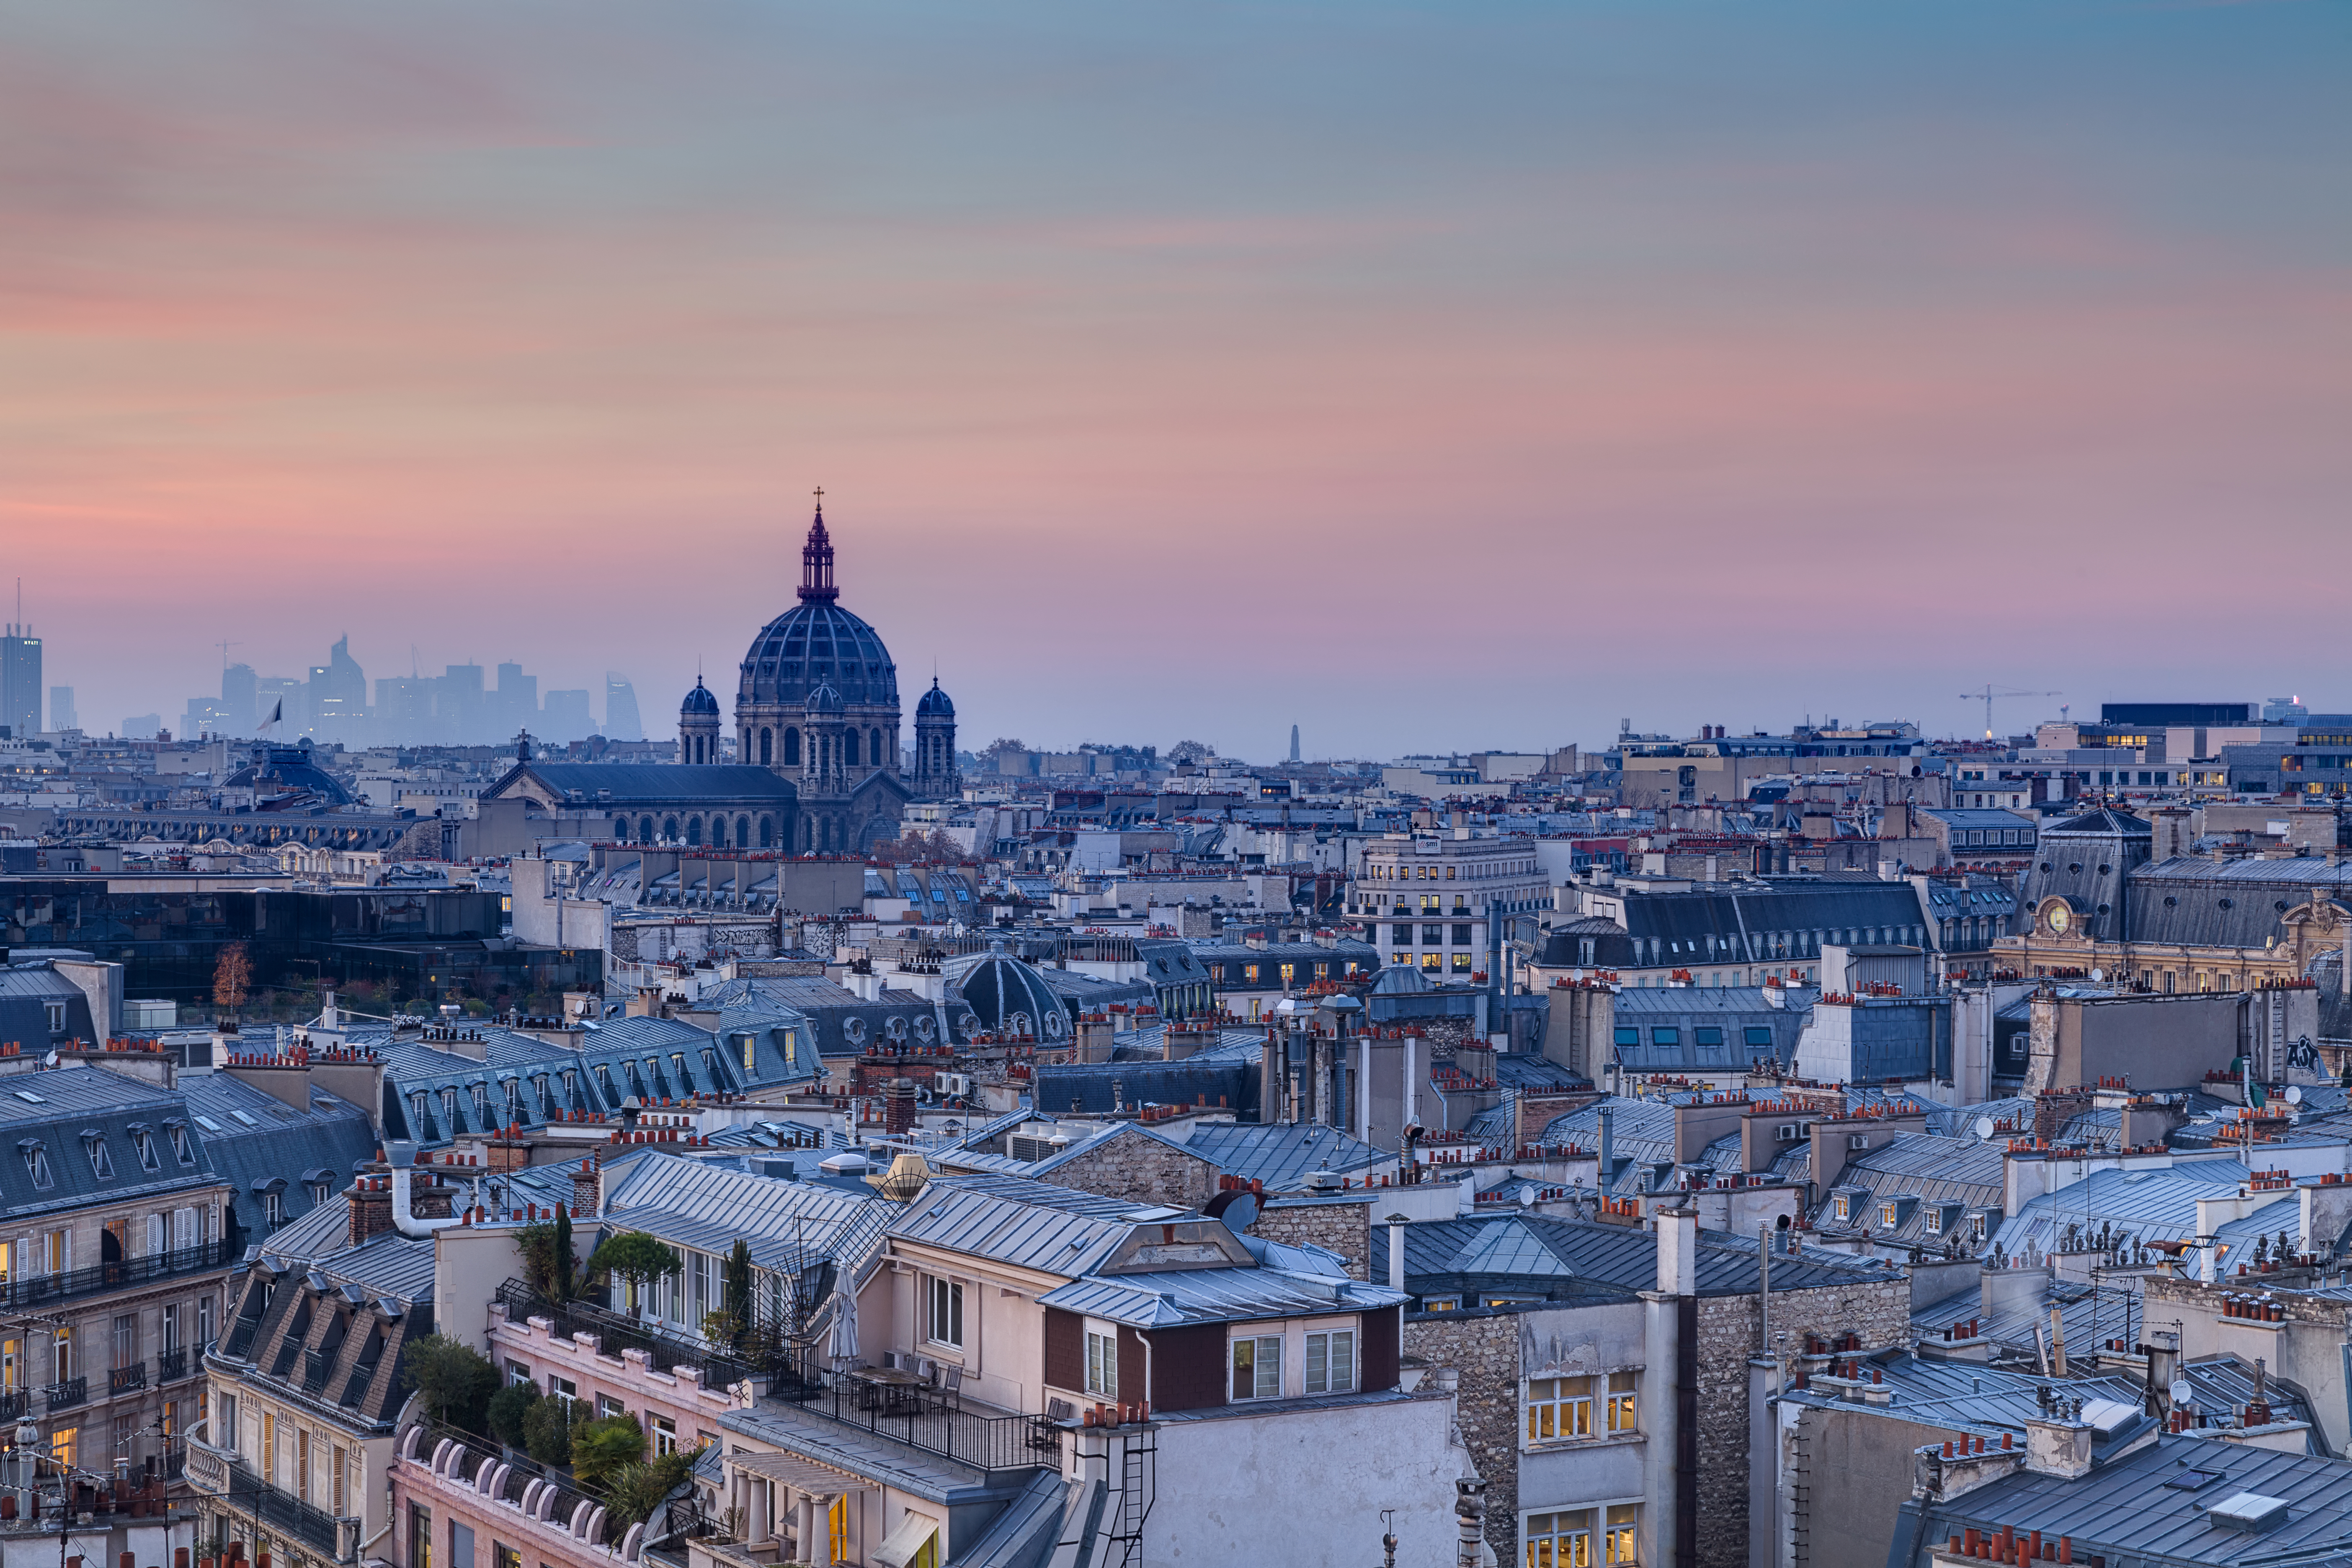 Paris Rooftops by Espinozr